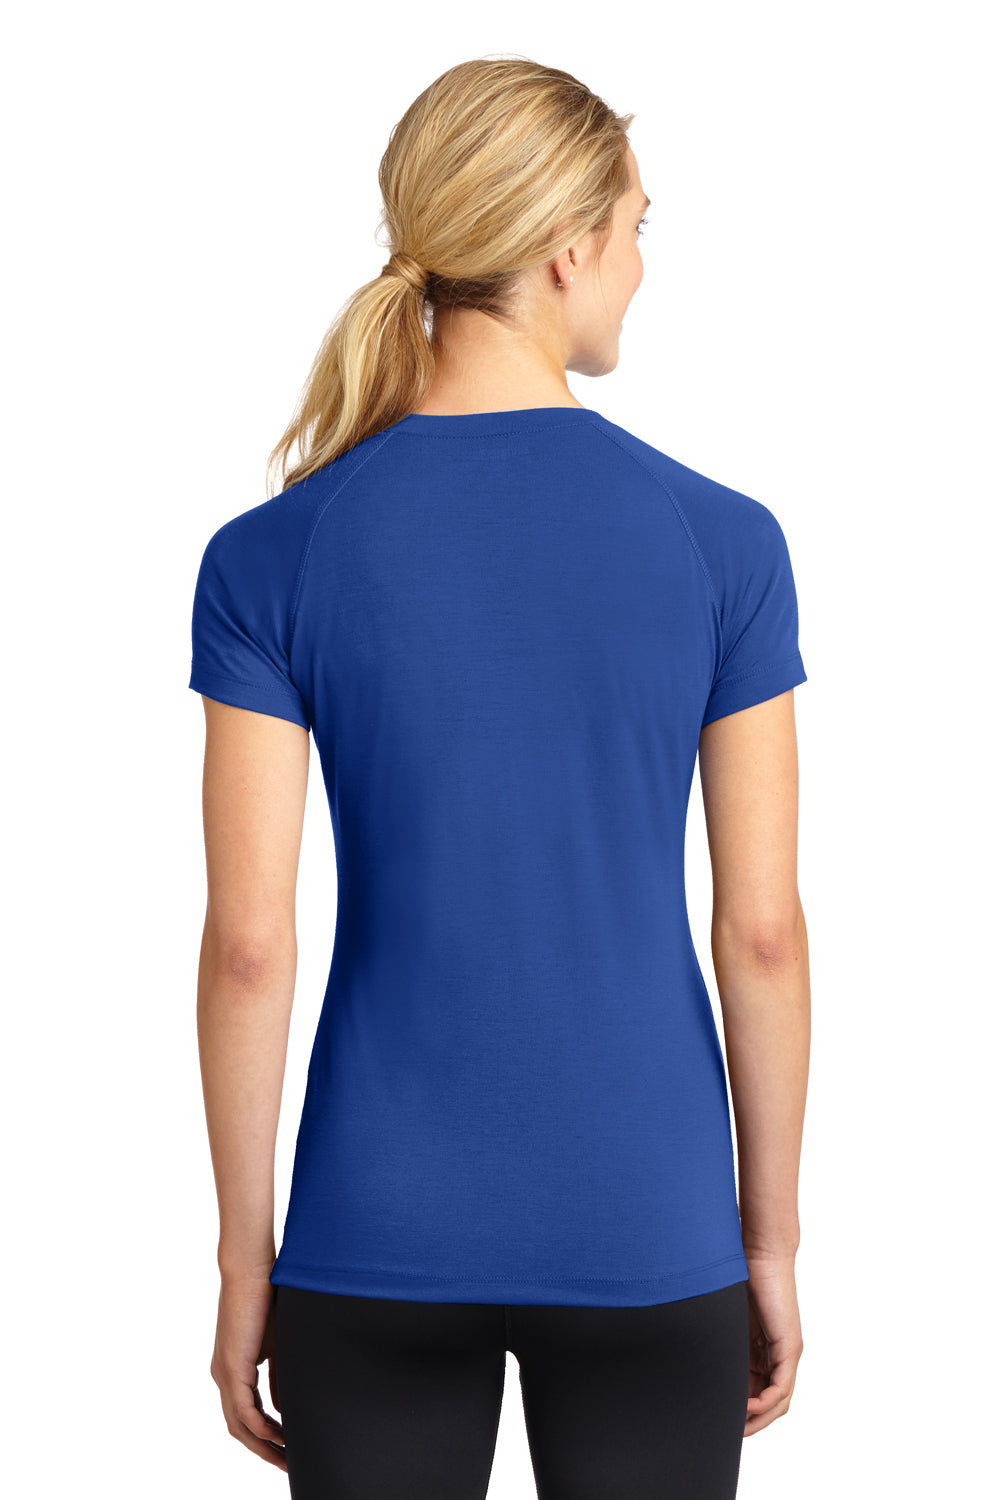 Sport-Tek LST700 Womens Ultimate Performance Moisture Wicking Short Sleeve V-Neck T-Shirt Royal Blue Back